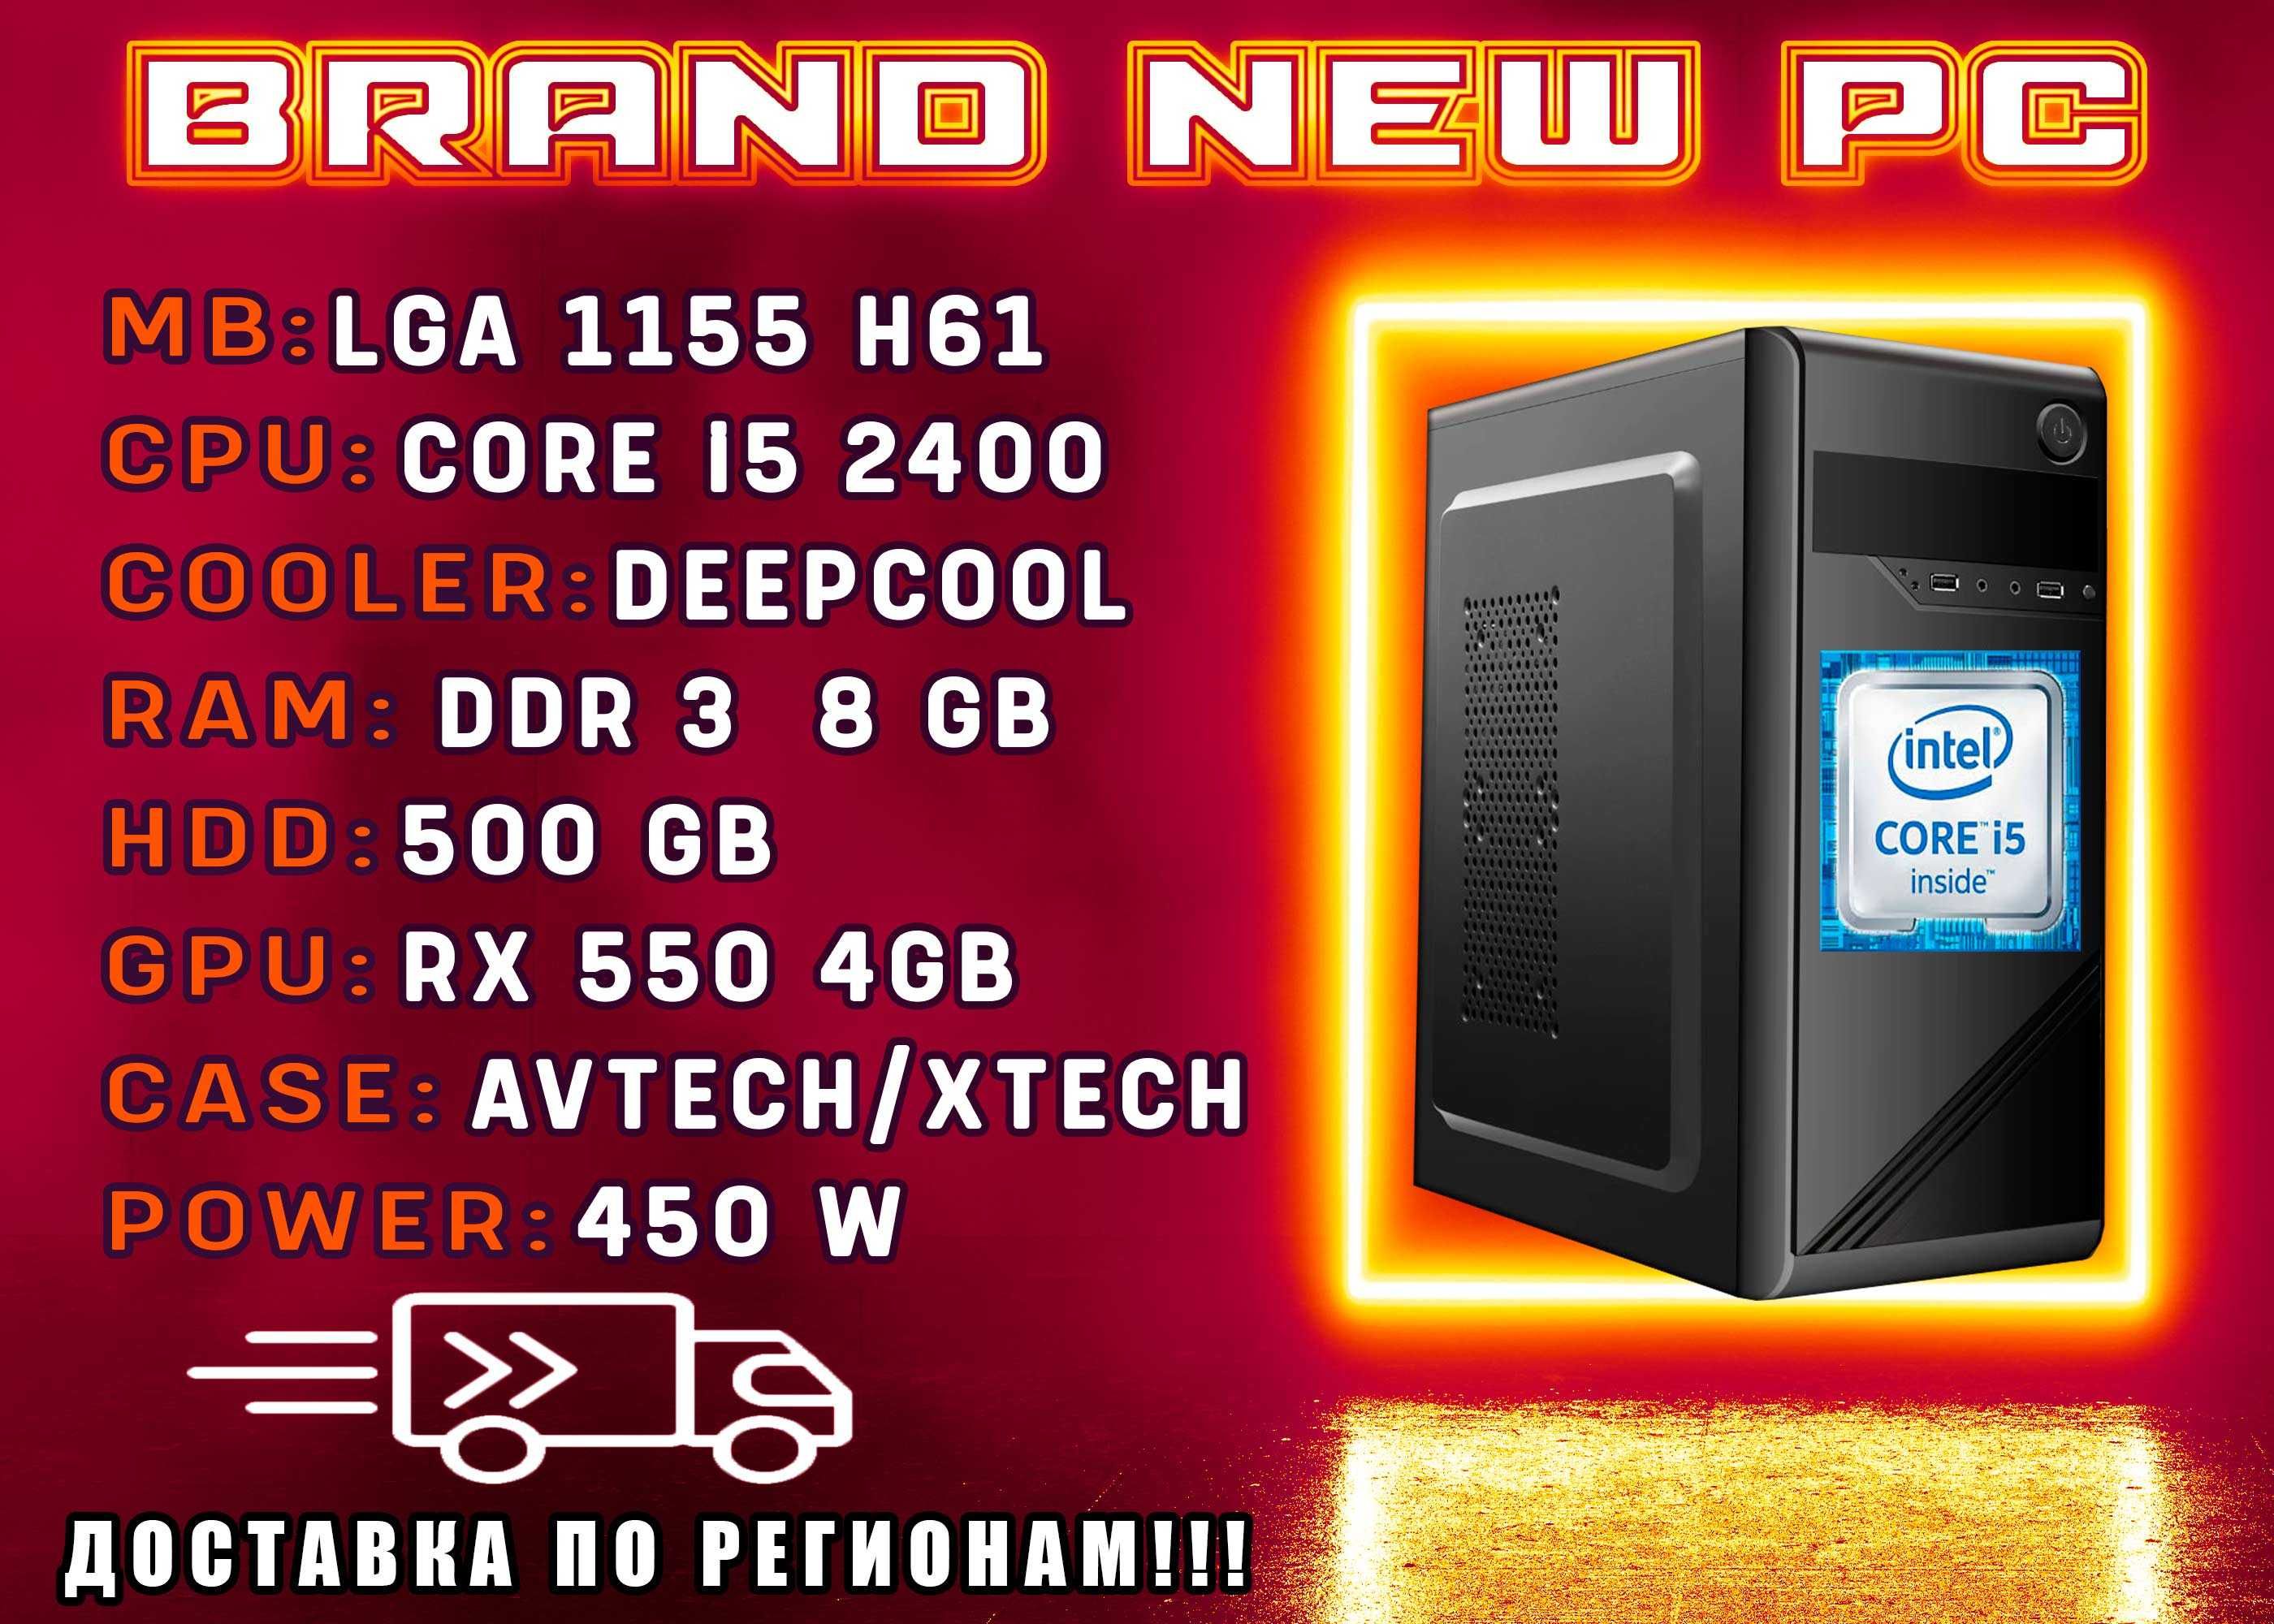 ИГРОВОЙ КЕЙС RX550 4GB/ i5 3.3Ghz/ 8gb RAM запись более 7000 игр